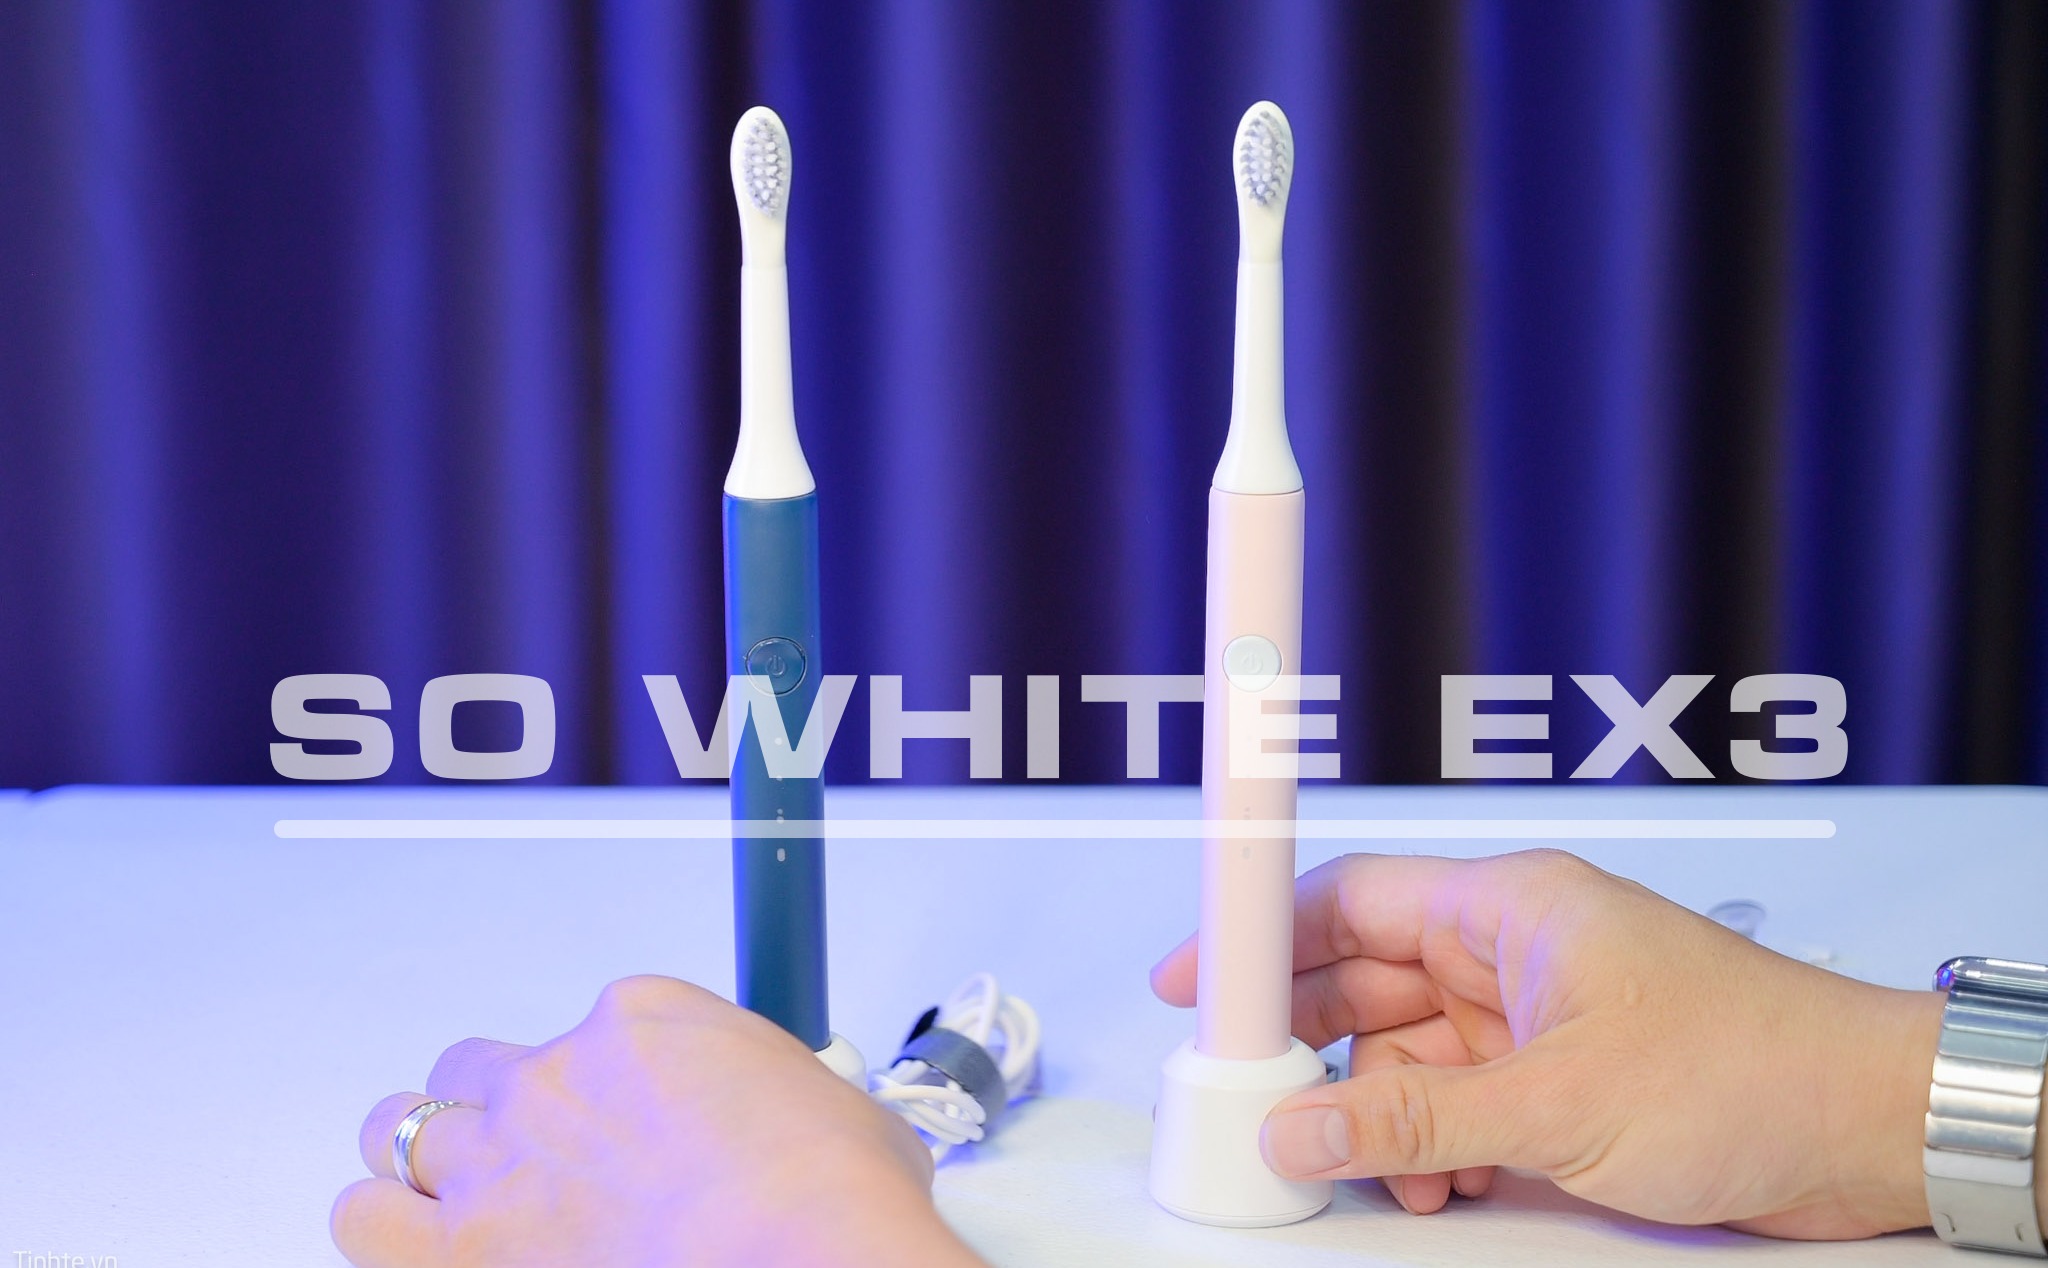 Chỉ cần 180K cũng chải răng rất sạch với bàn chải điện So White EX3, đầu bàn chải 34.5k/cái